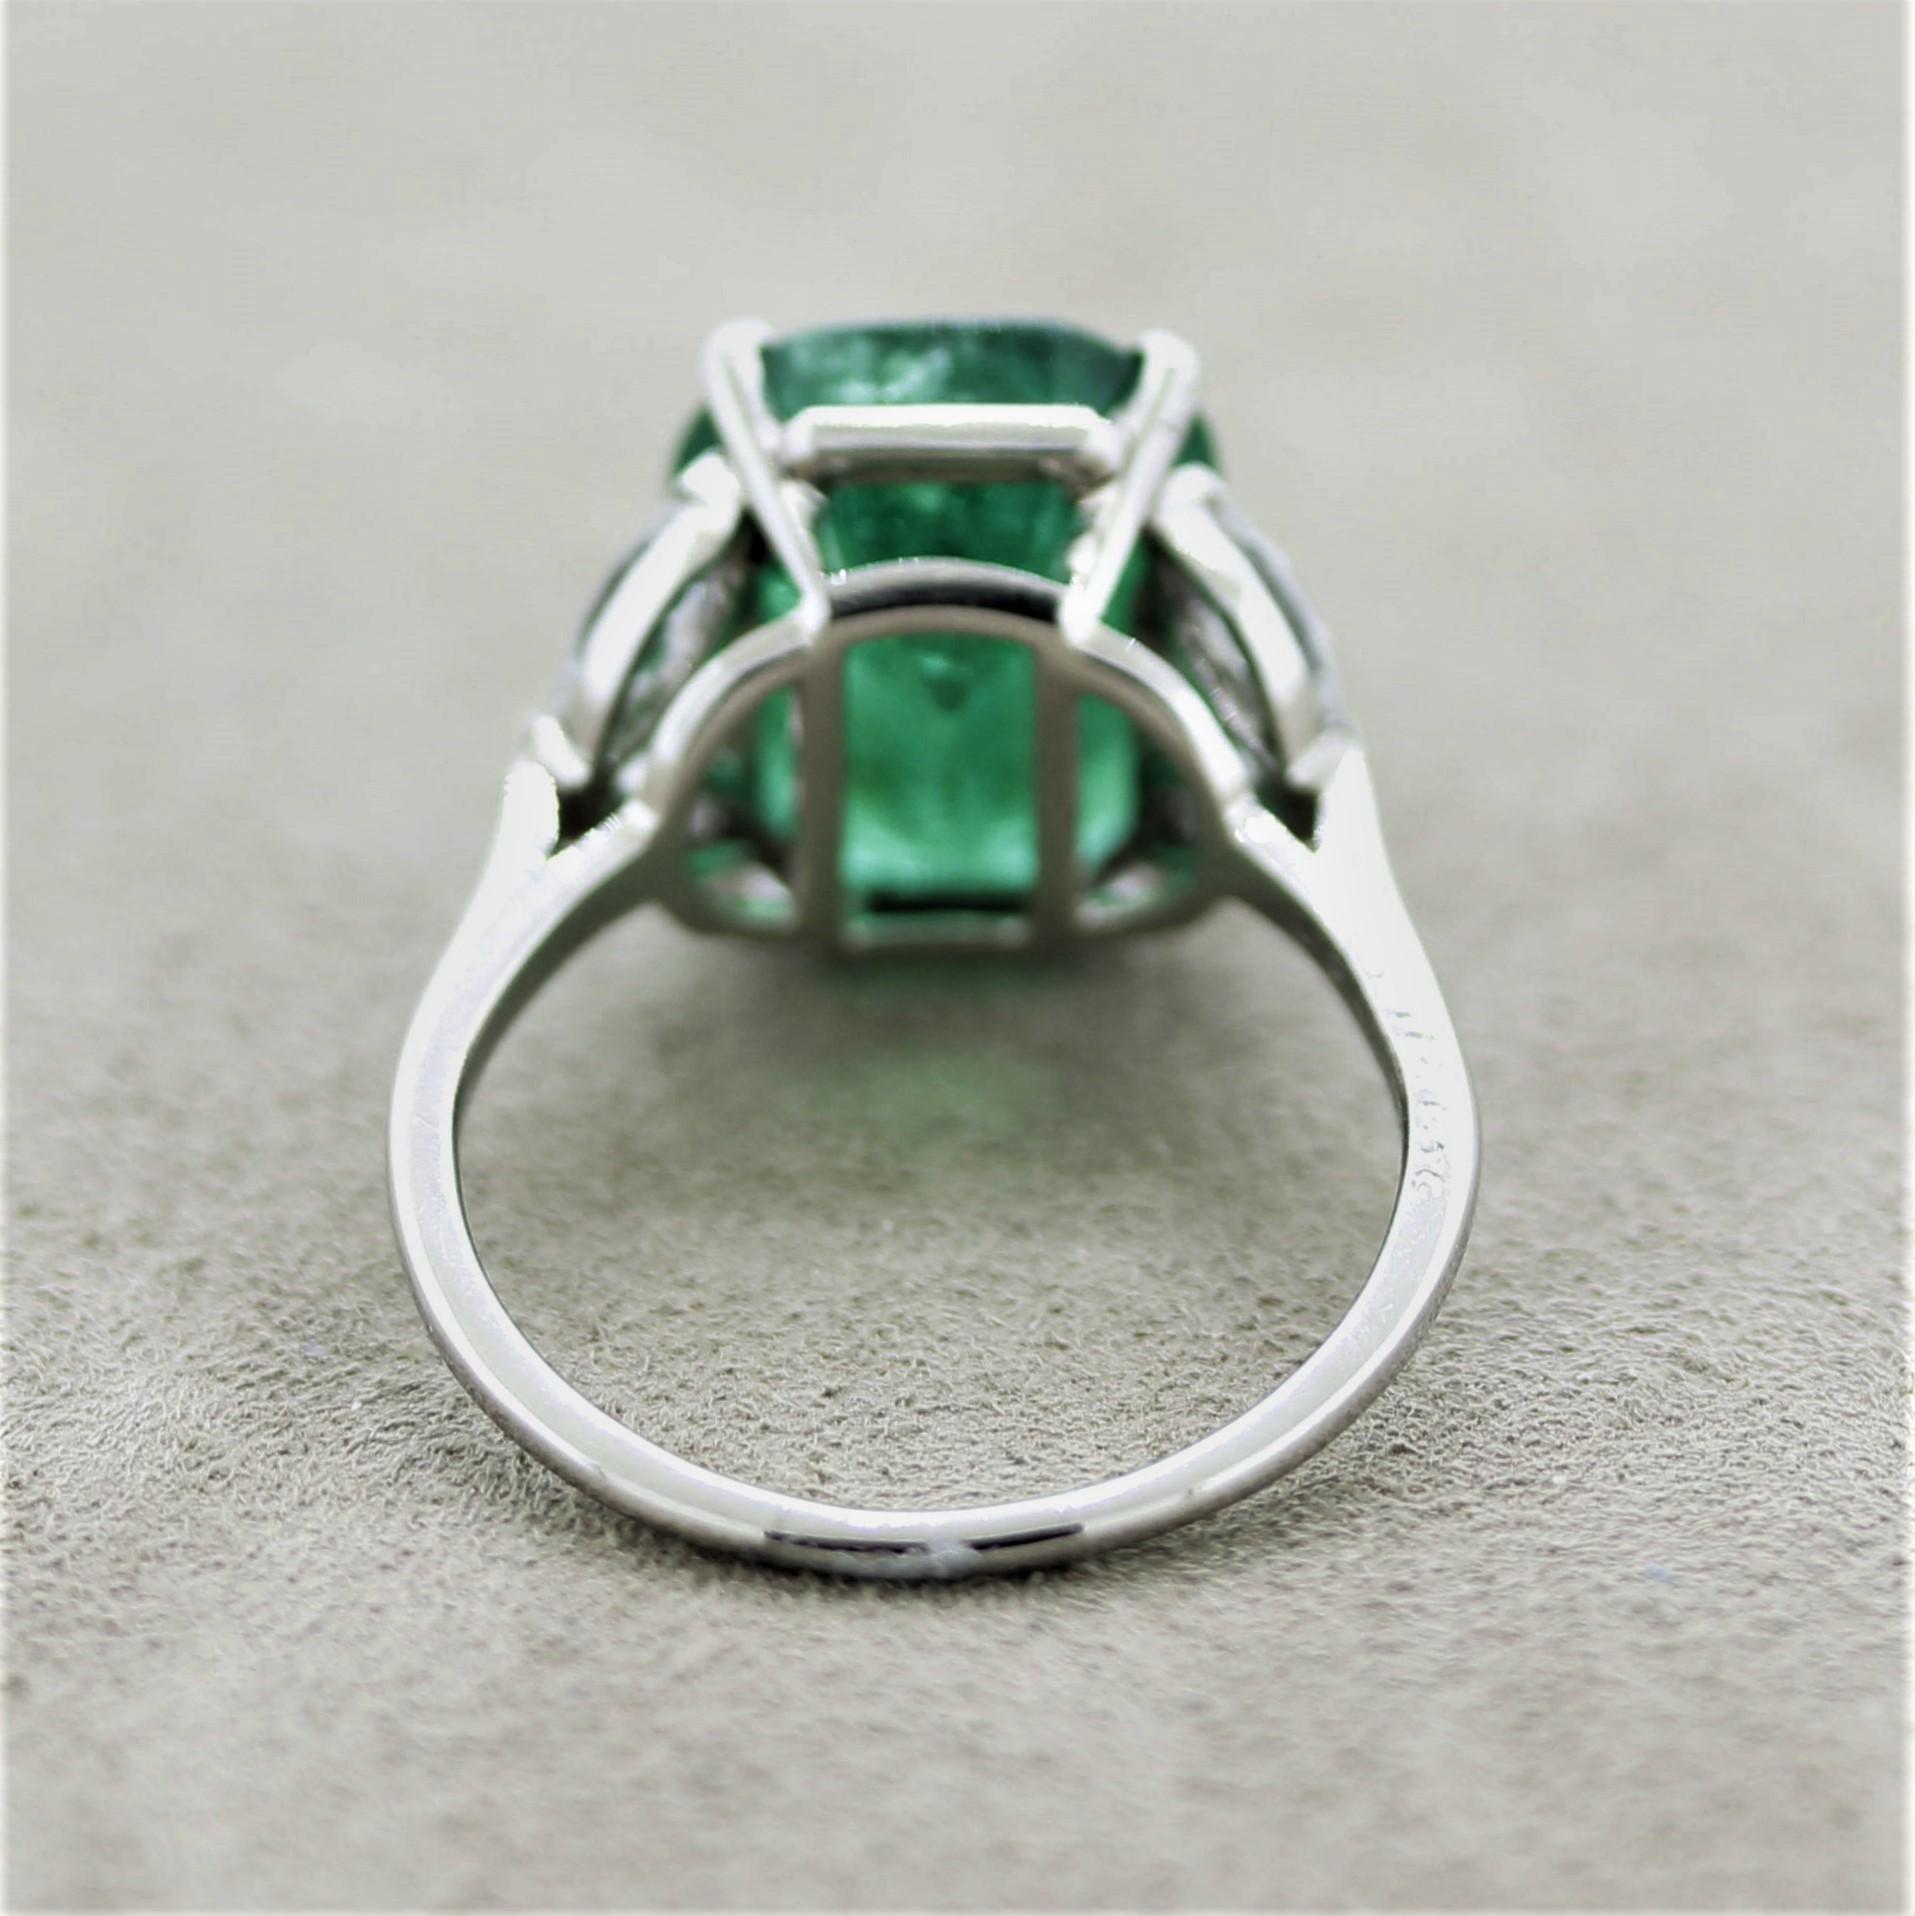 Mixed Cut Cartier Emerald Diamond Platinum Ring, SSEF Certified